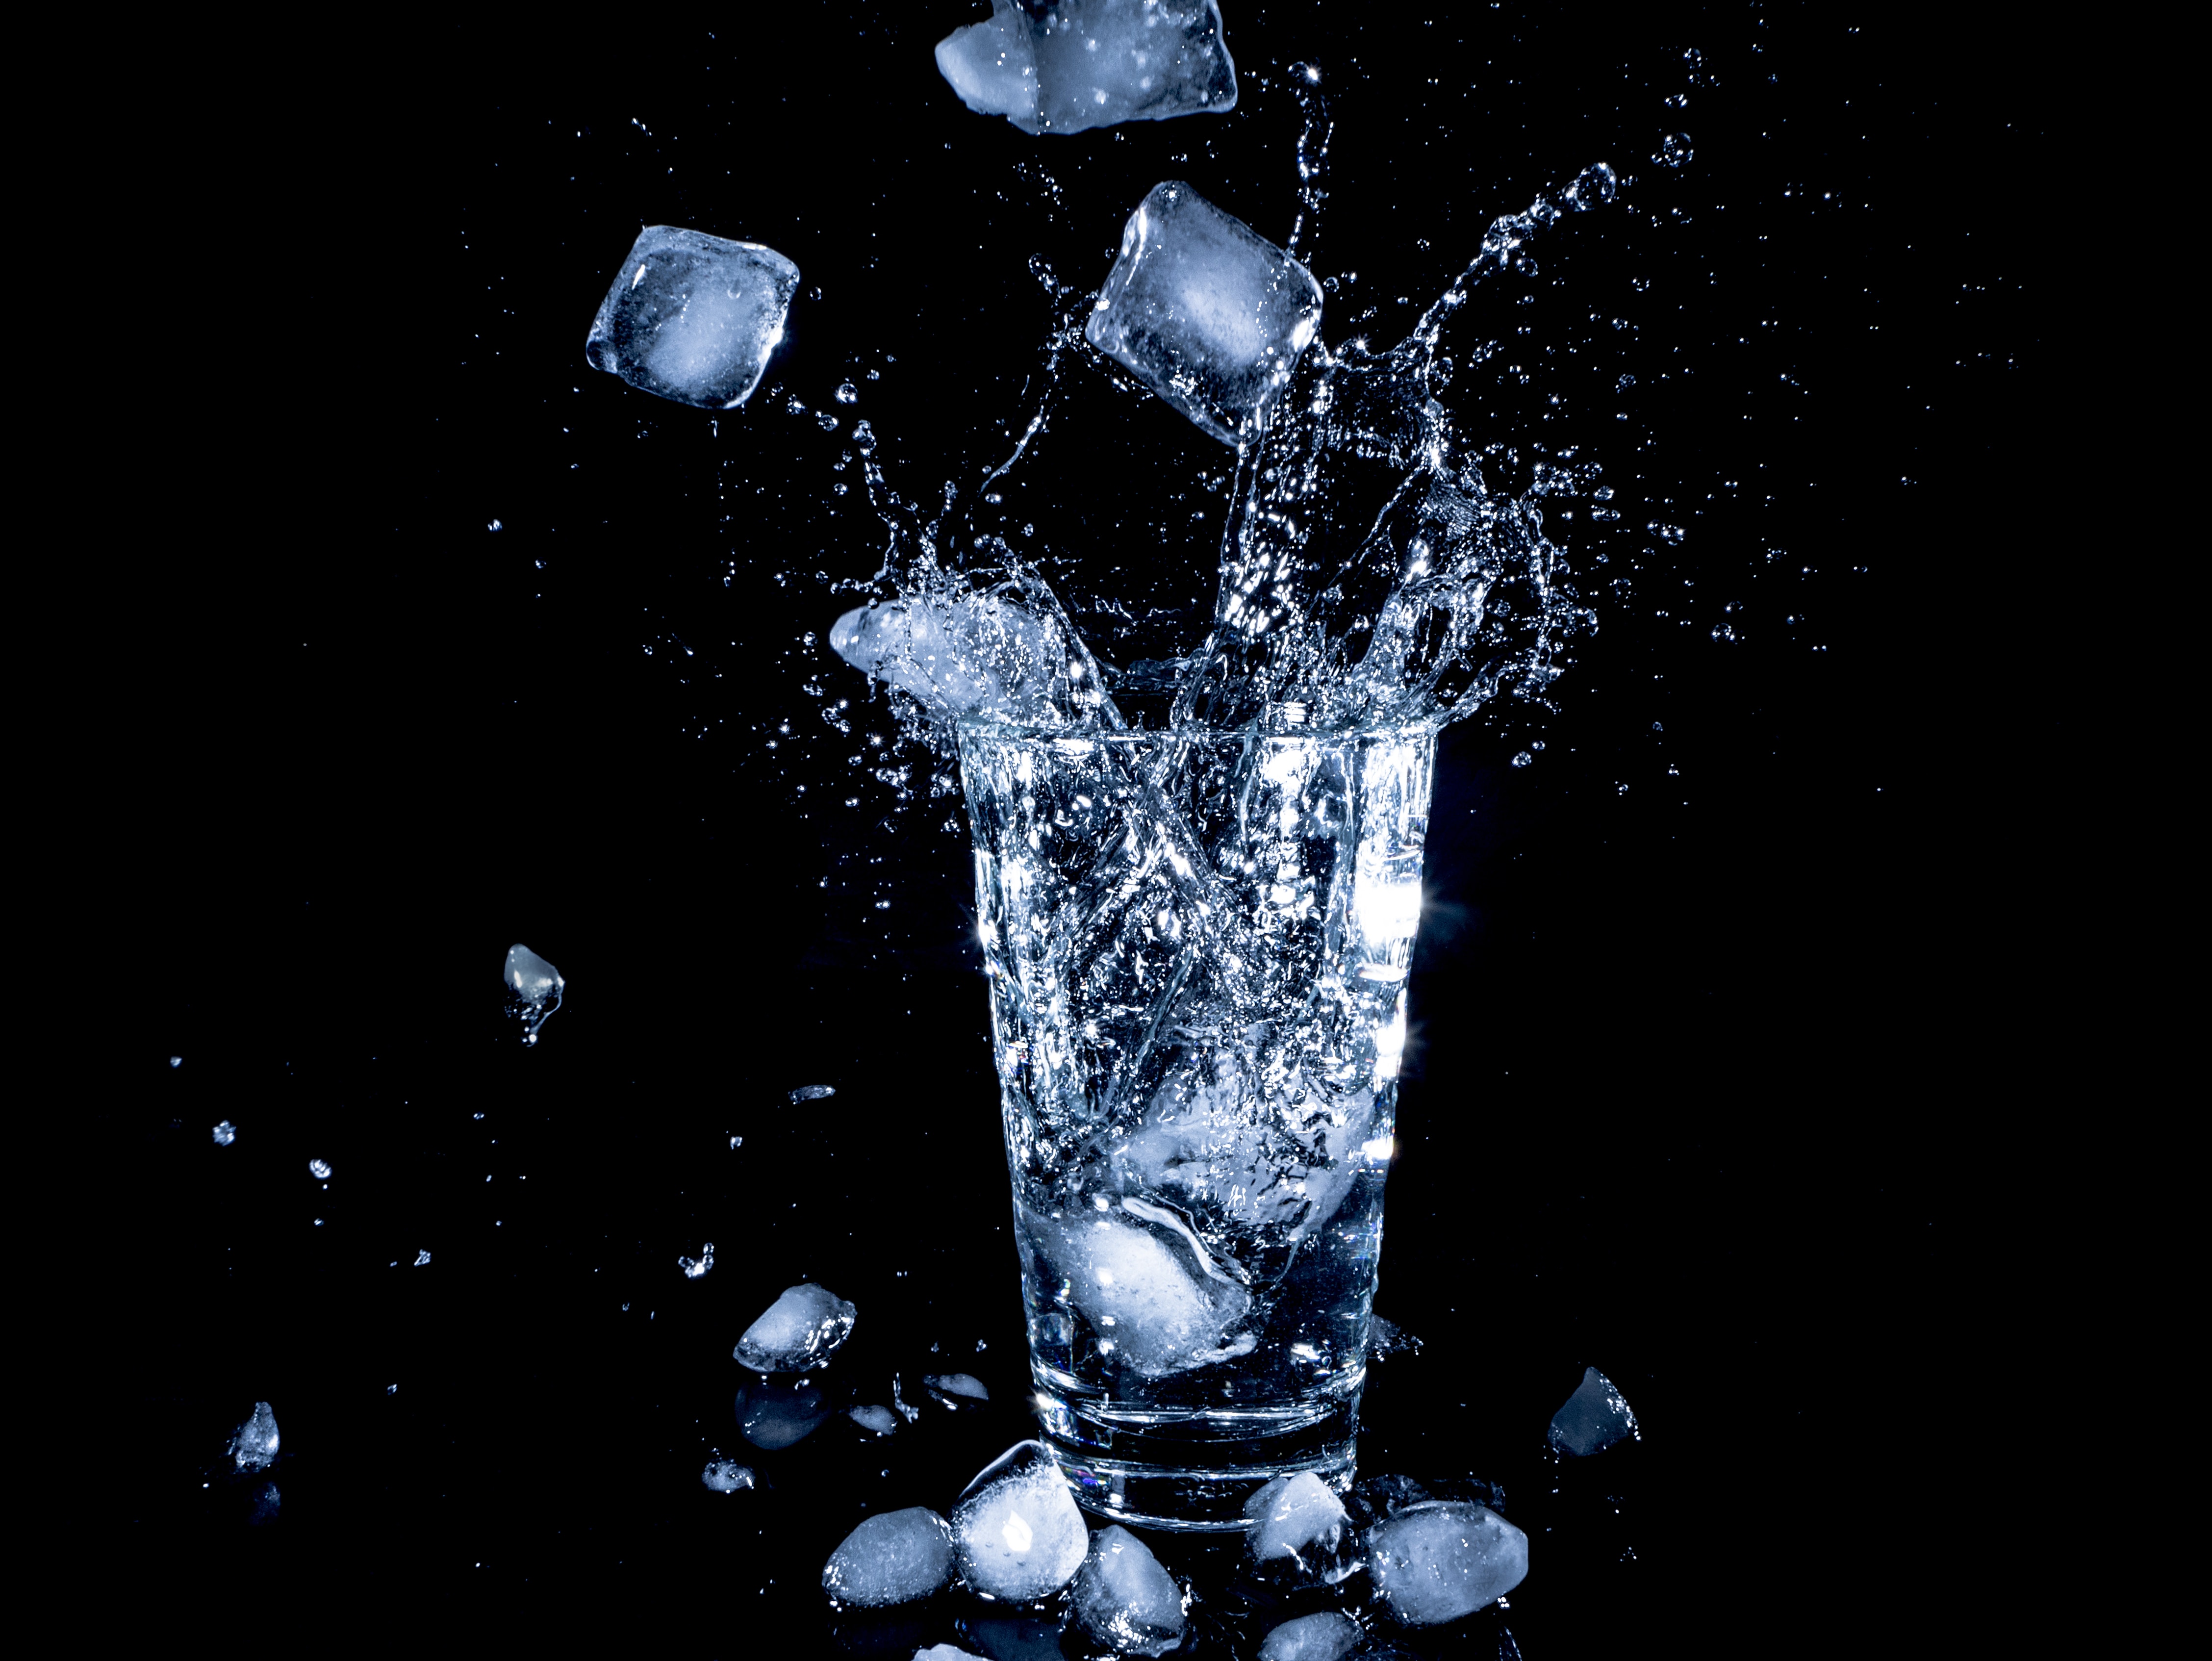 Glass water, miscellaneous, miscellanea, spray Free Stock Photos